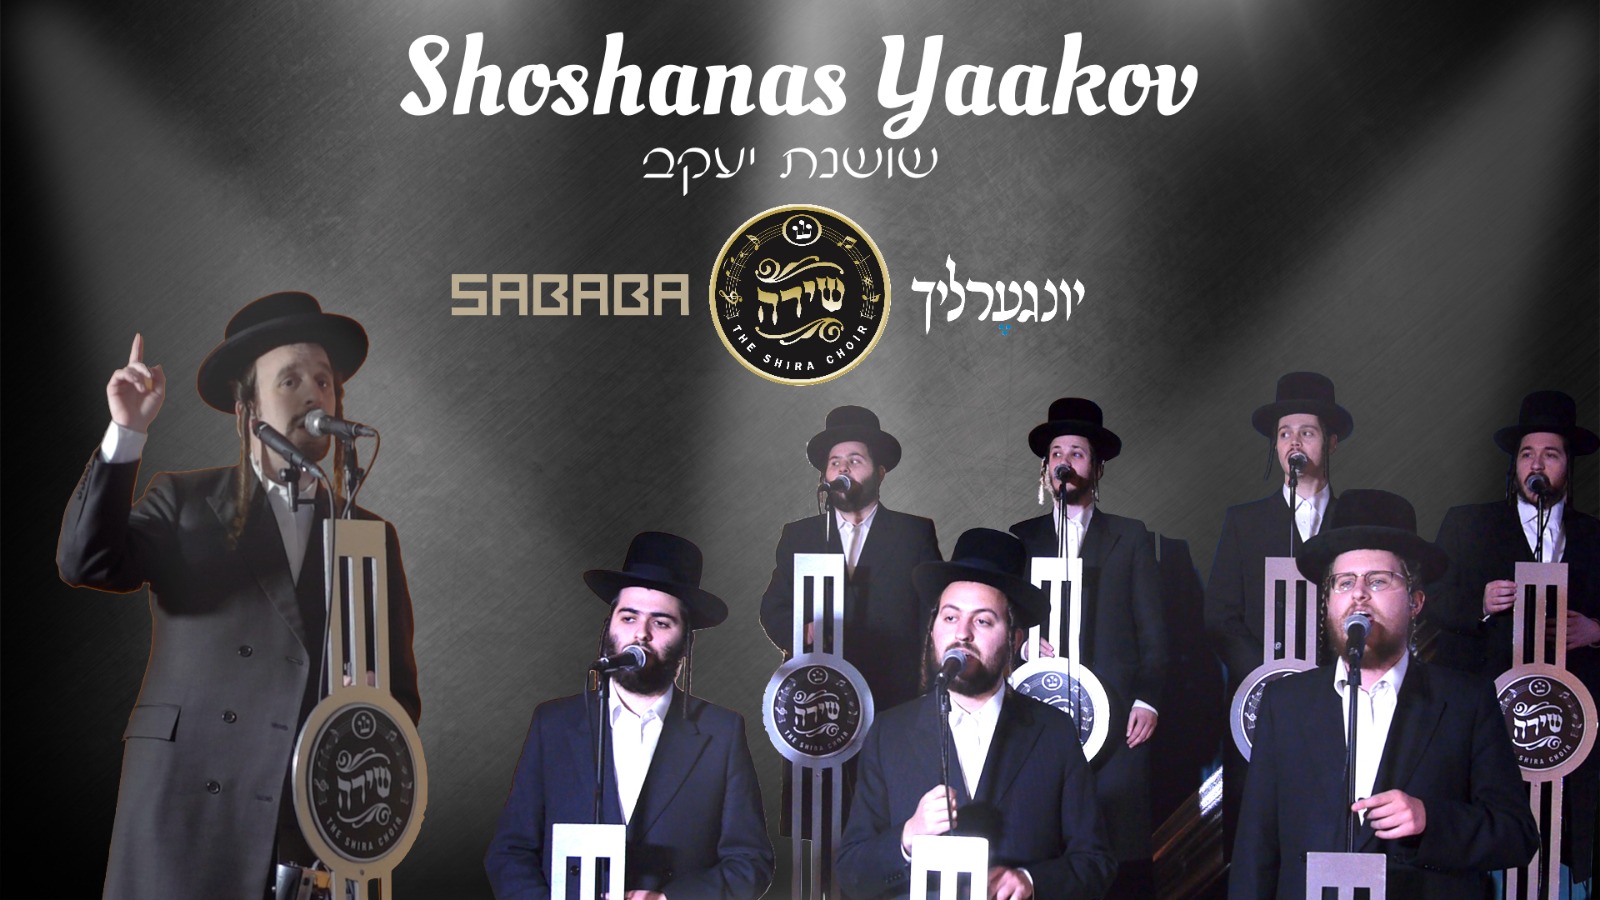 Shoishanas Yaakov Shira